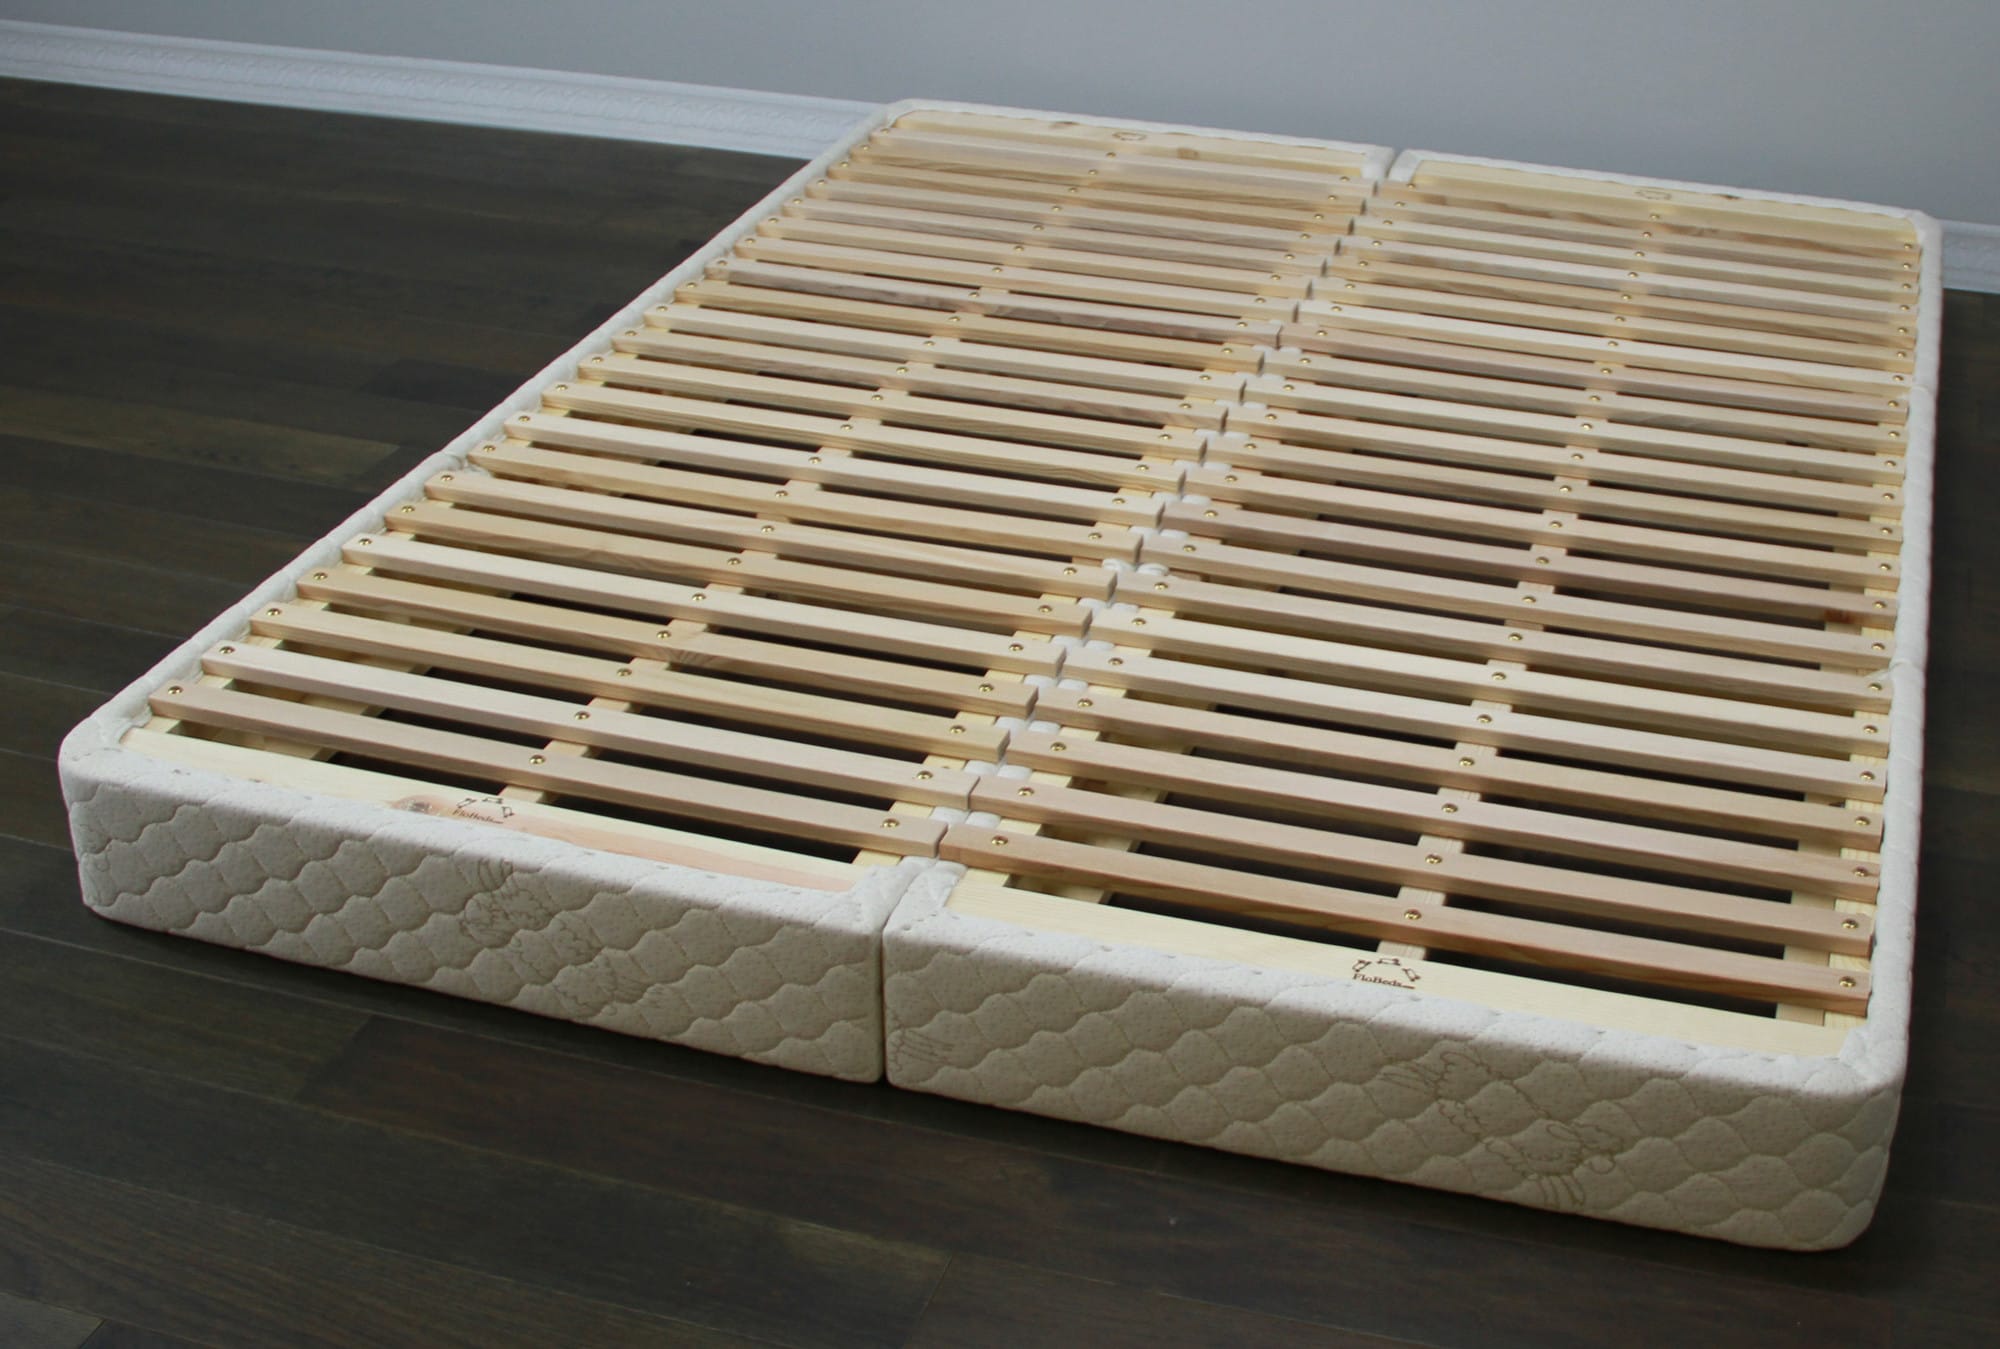 latex mattress wood foundation